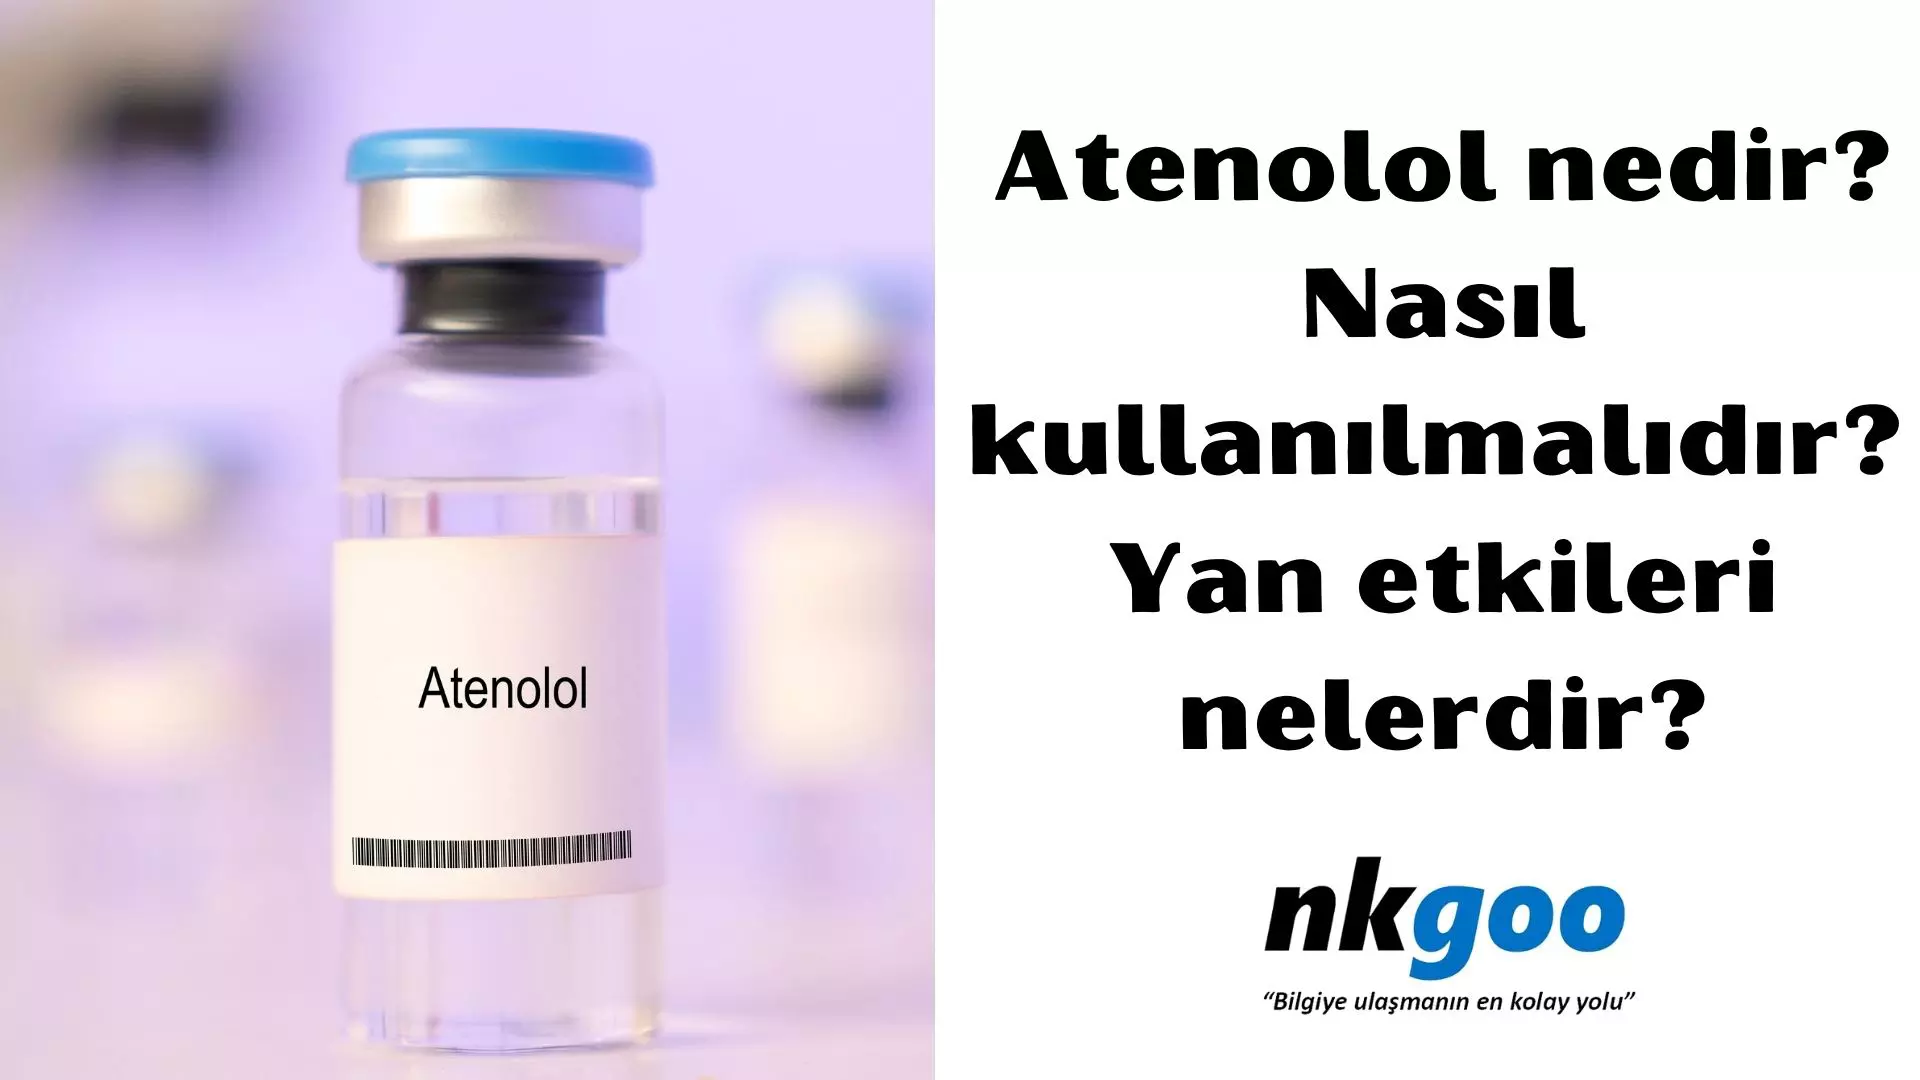 Atenolol nedir? Nasıl kullanılmalıdır? Yan etkileri